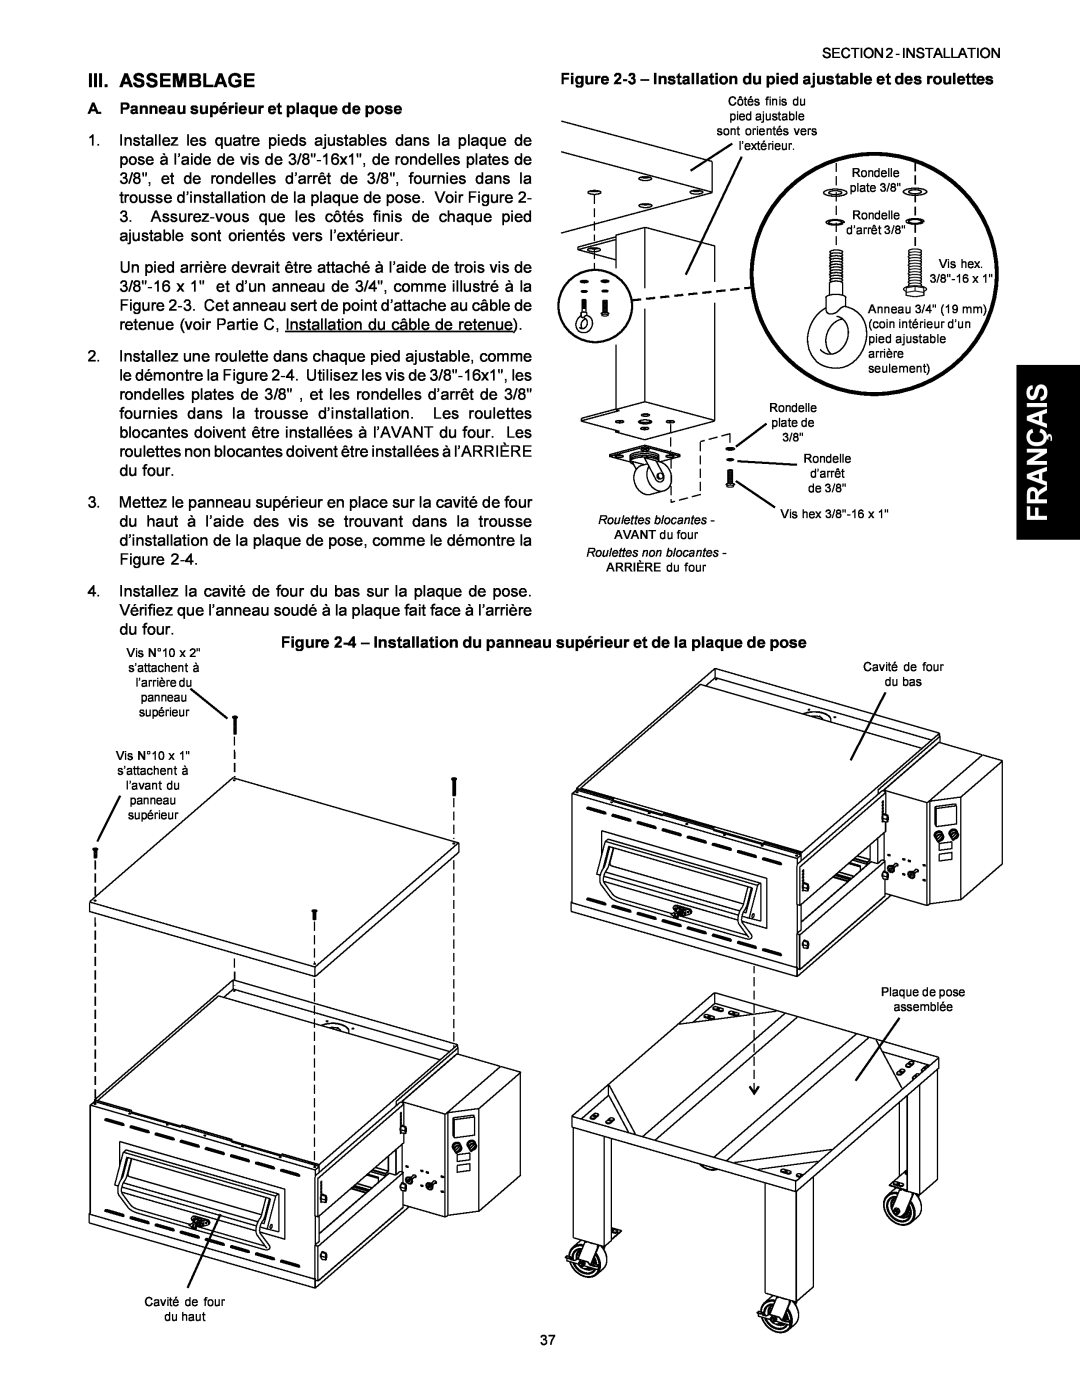 Middleby Marshall Model PS536 installation manual Français, Iii. Assemblage, A. Panneau supérieur et plaque de pose 